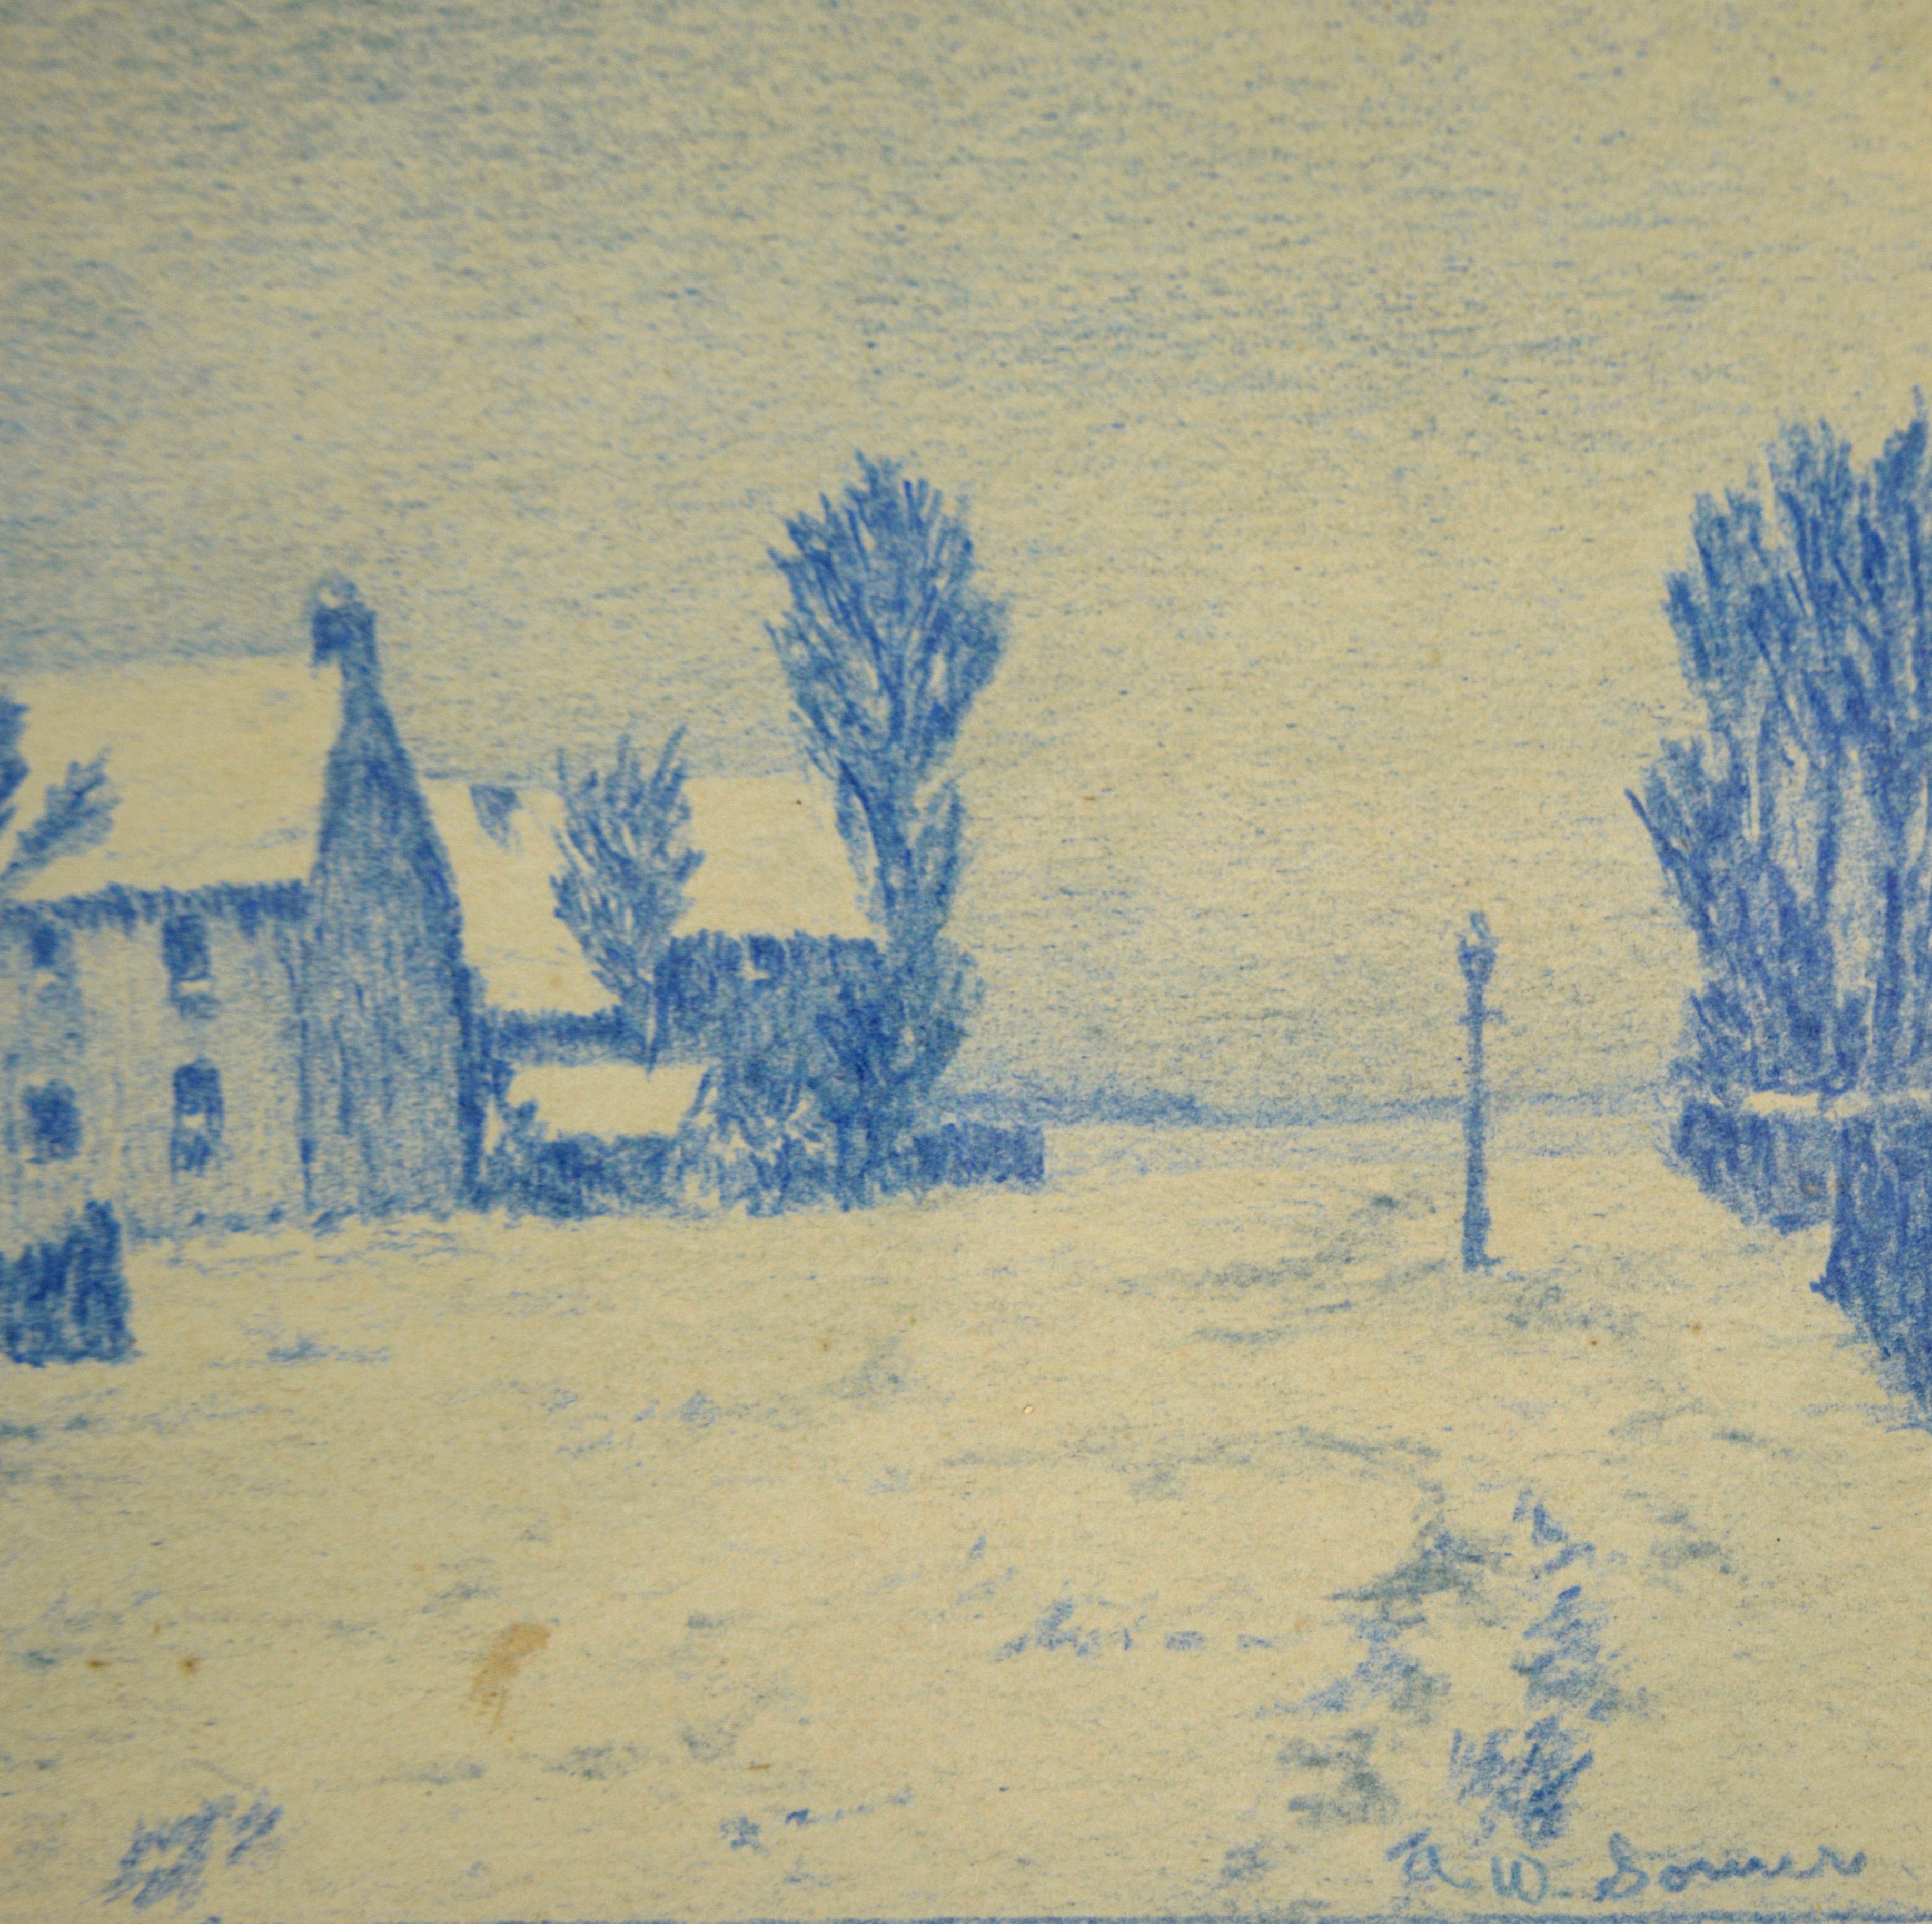 The Blue Street – Monochrome ländliche Stadtlandschaft mit Bleistift auf Papier

Zarte Zeichnung einer ländlichen Straße von Alle Wijtze 